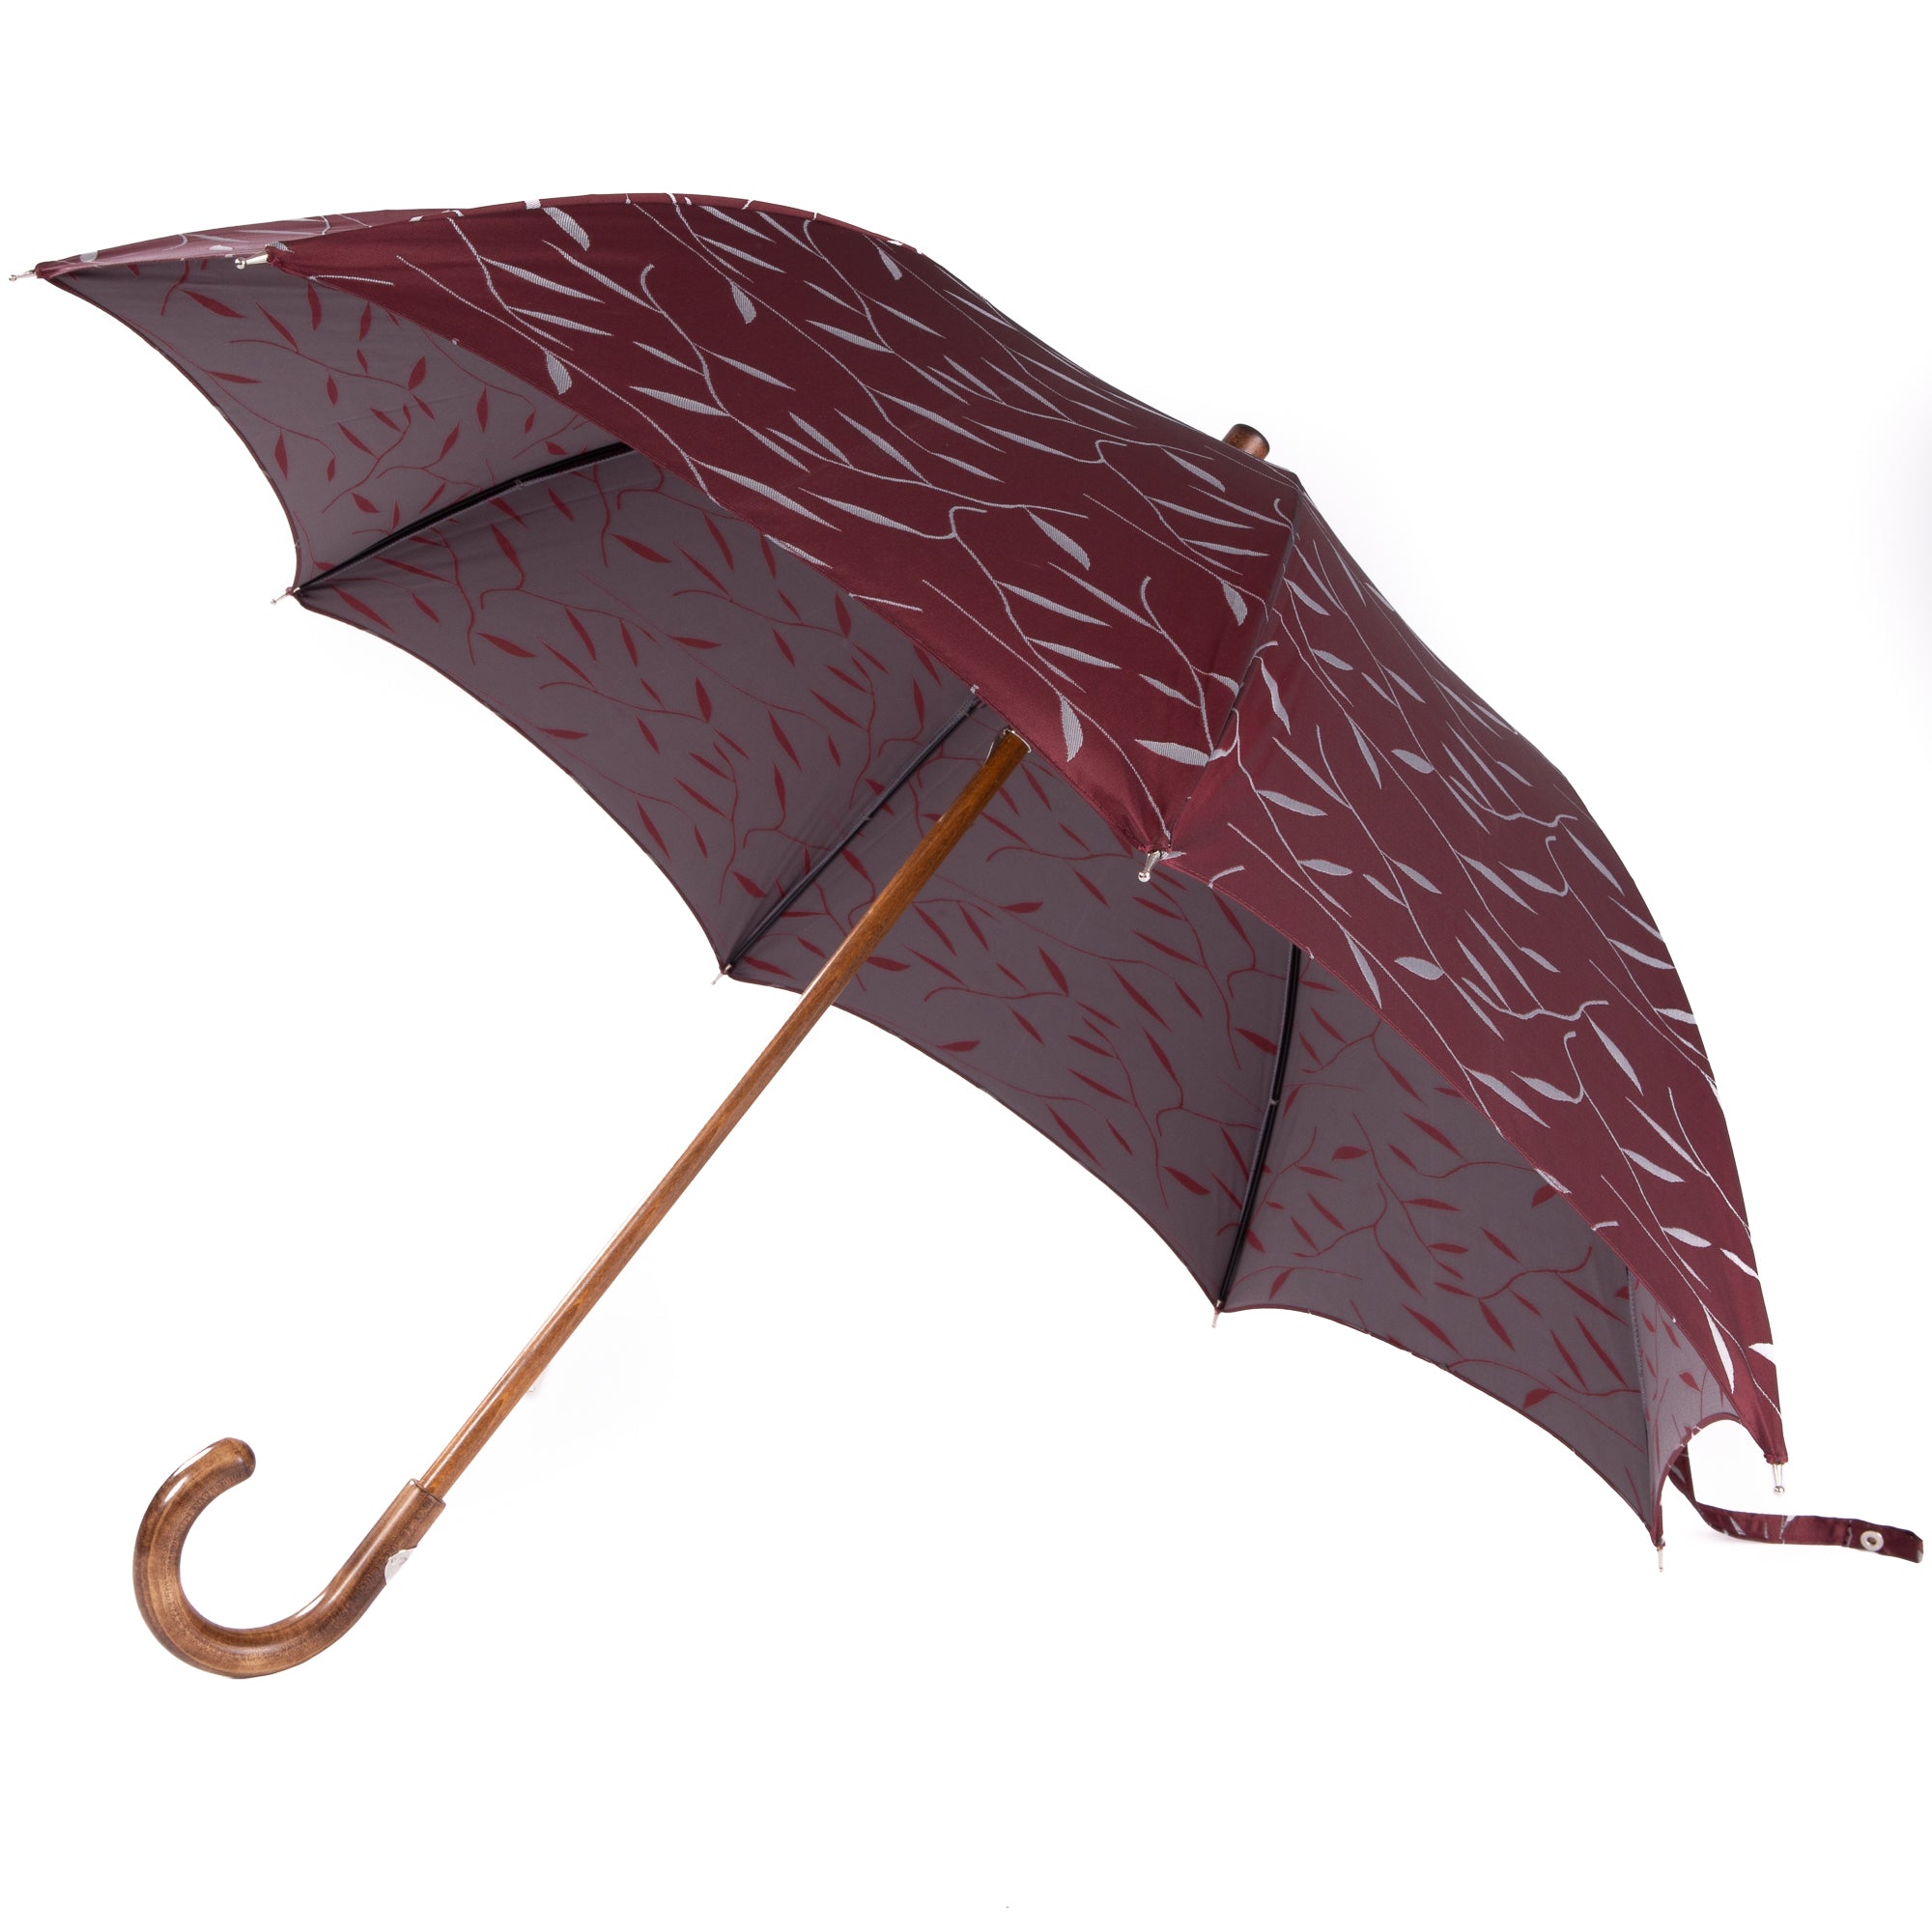 Tampus Umbrella with Maple Handle